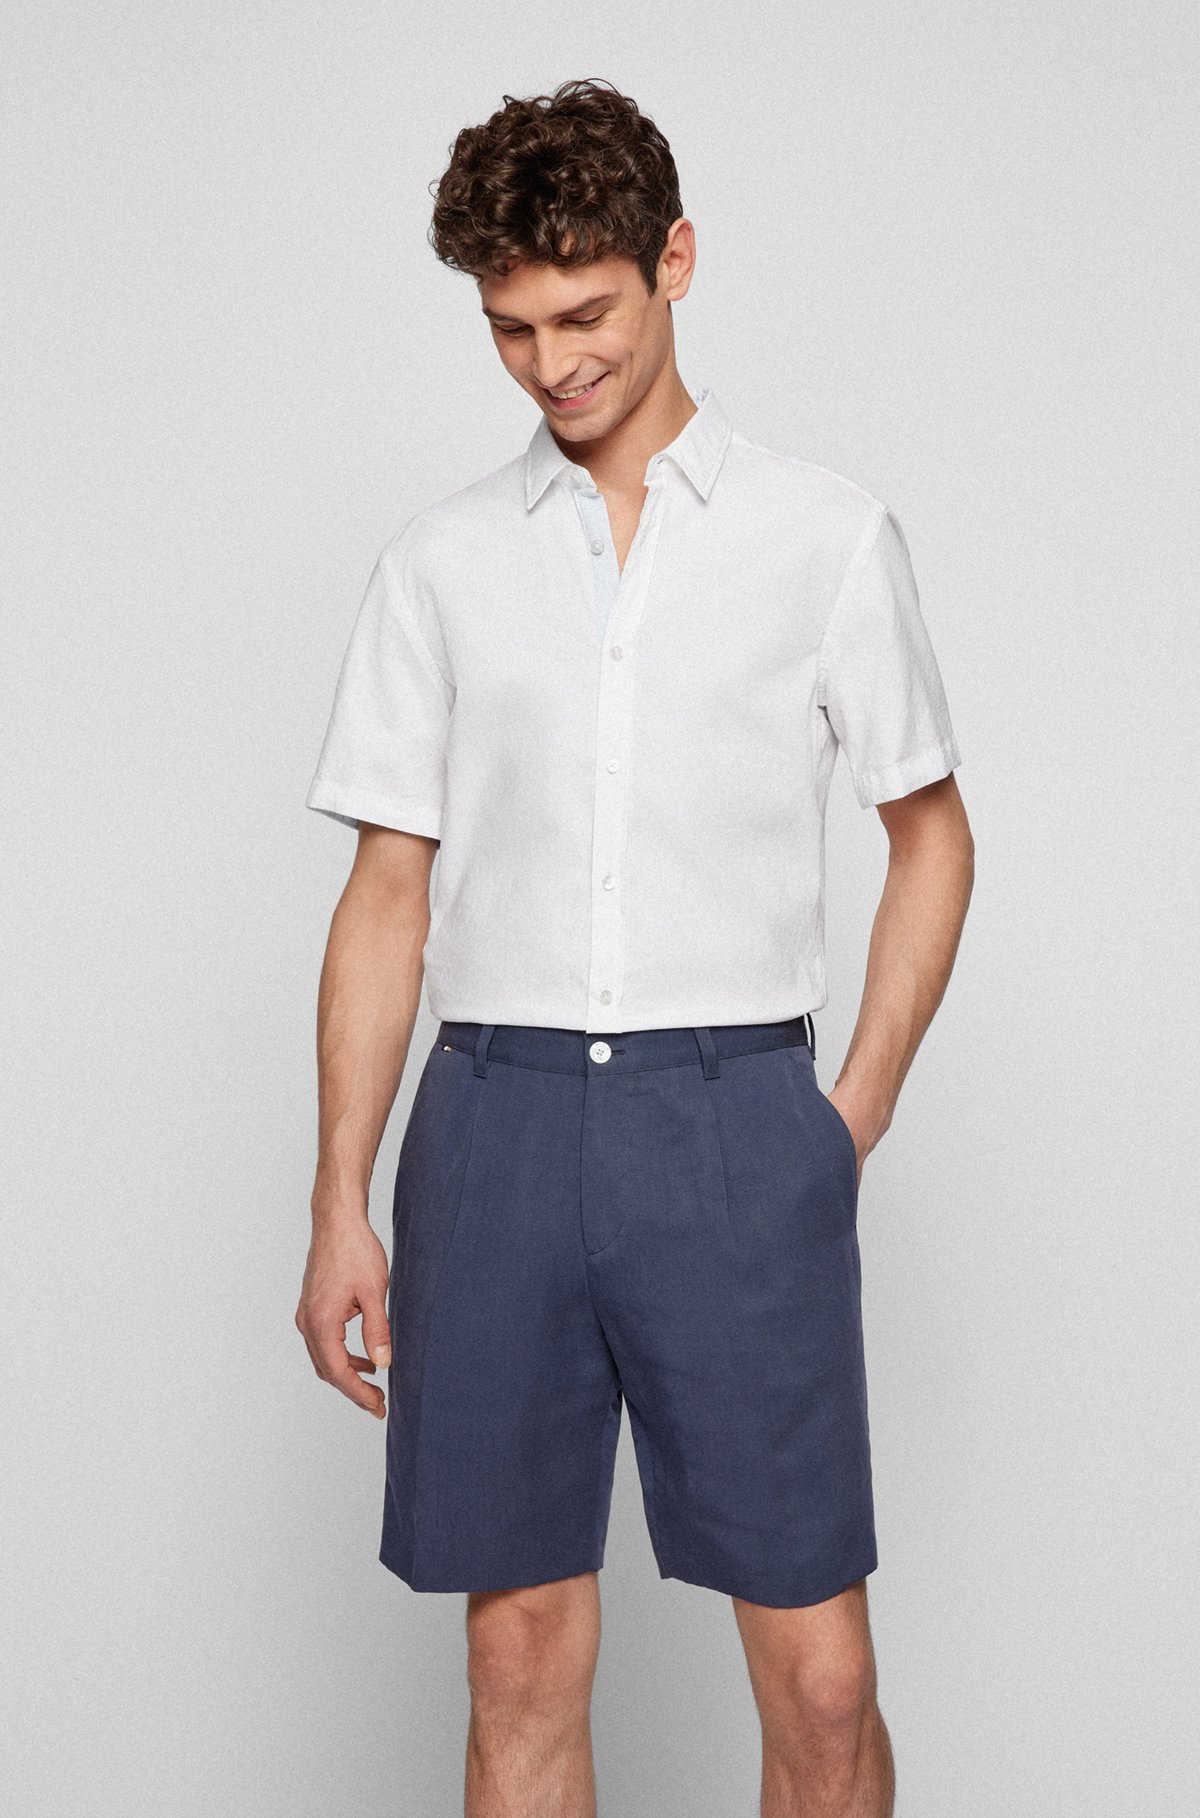 Camisa de manga corta slim fit de algodón orgánico estampado, Blanco